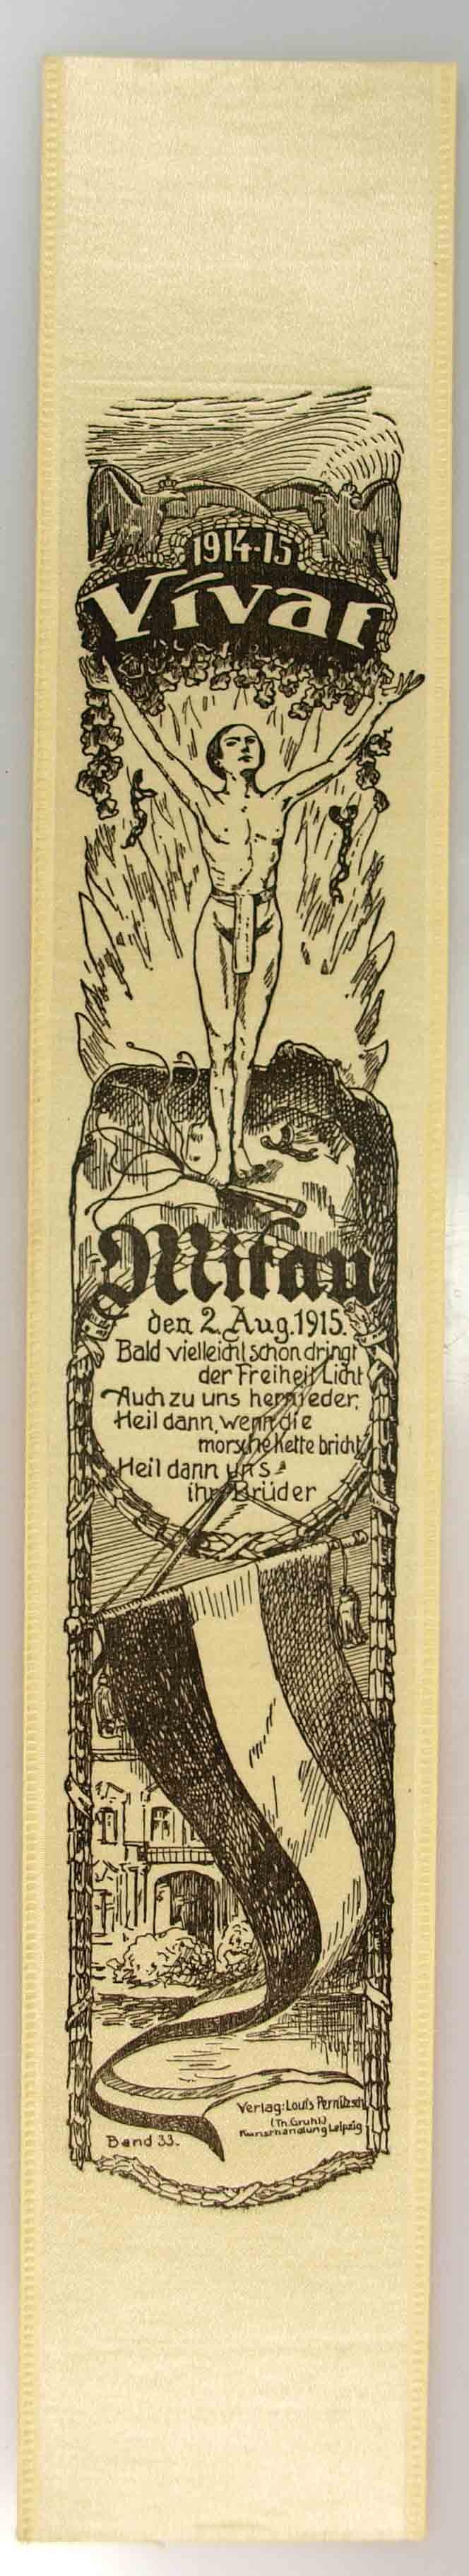 Vivatband anläßlich der Einnahme der Stadt Mitau am 2. August 1915, 1. Weltkrieg (Museum Weißenfels - Schloss Neu-Augustusburg CC BY-NC-SA)